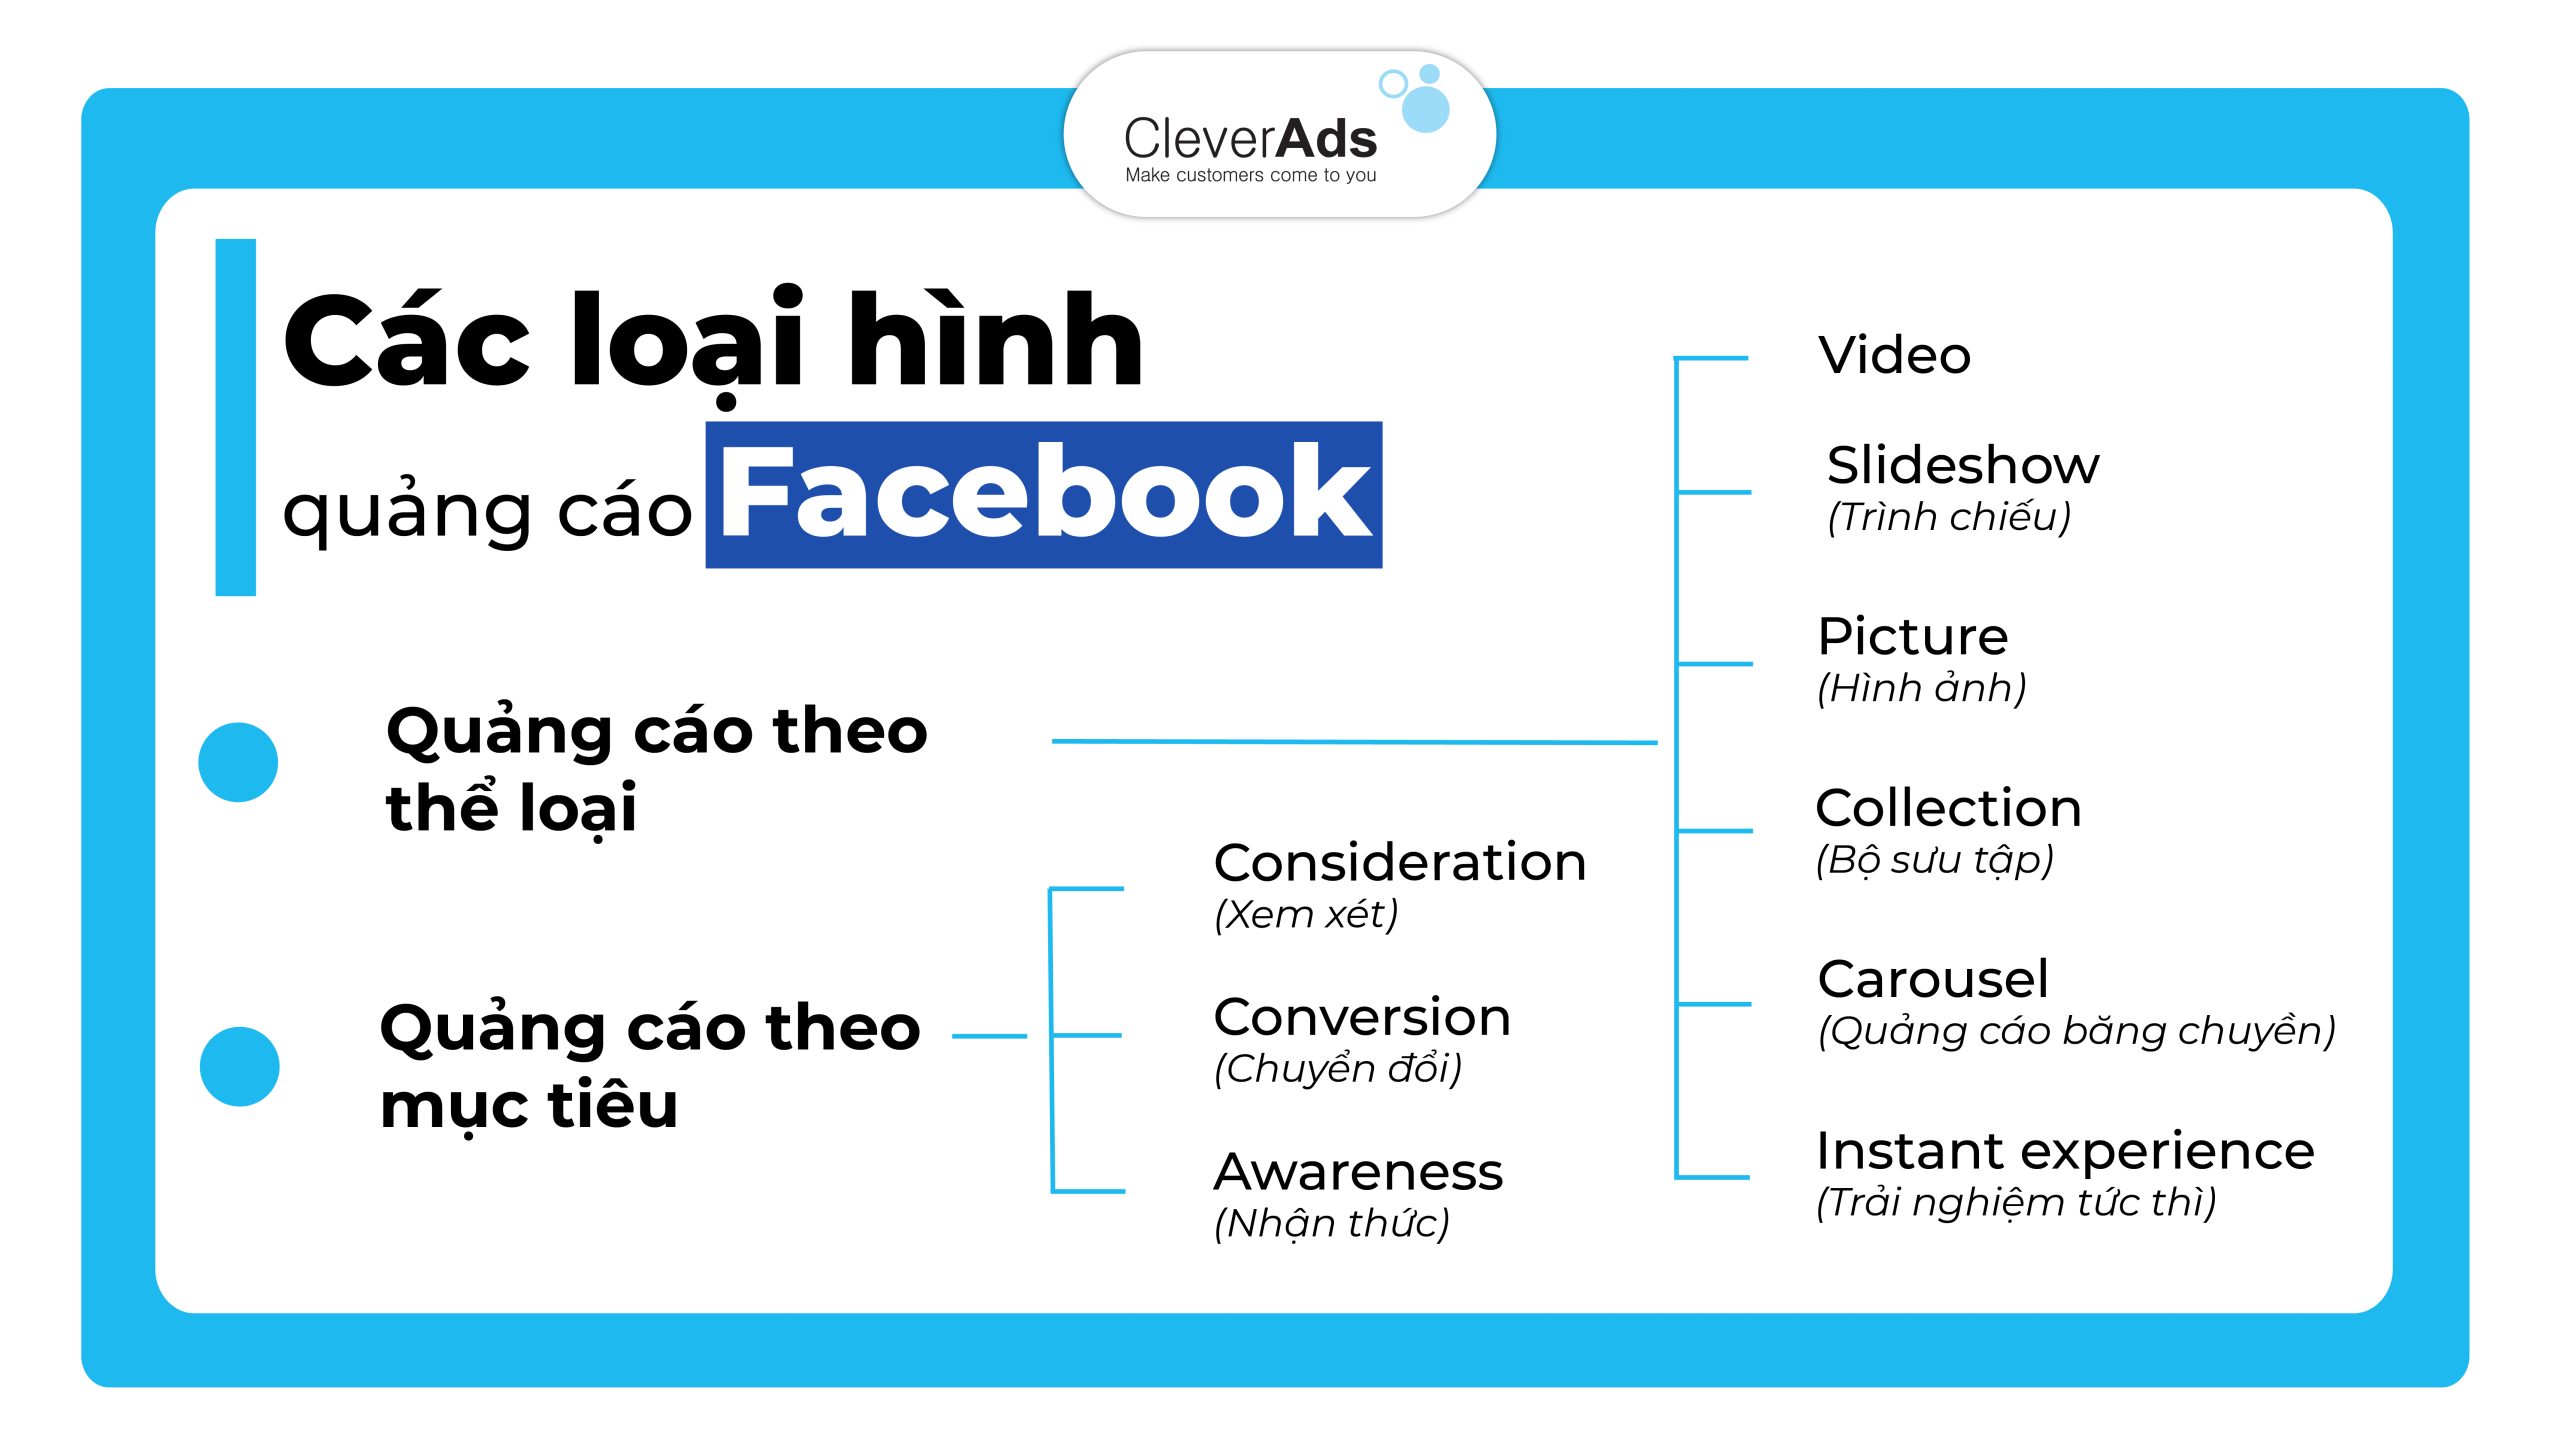 Các loại hình dịch vụ quảng cáo facebook